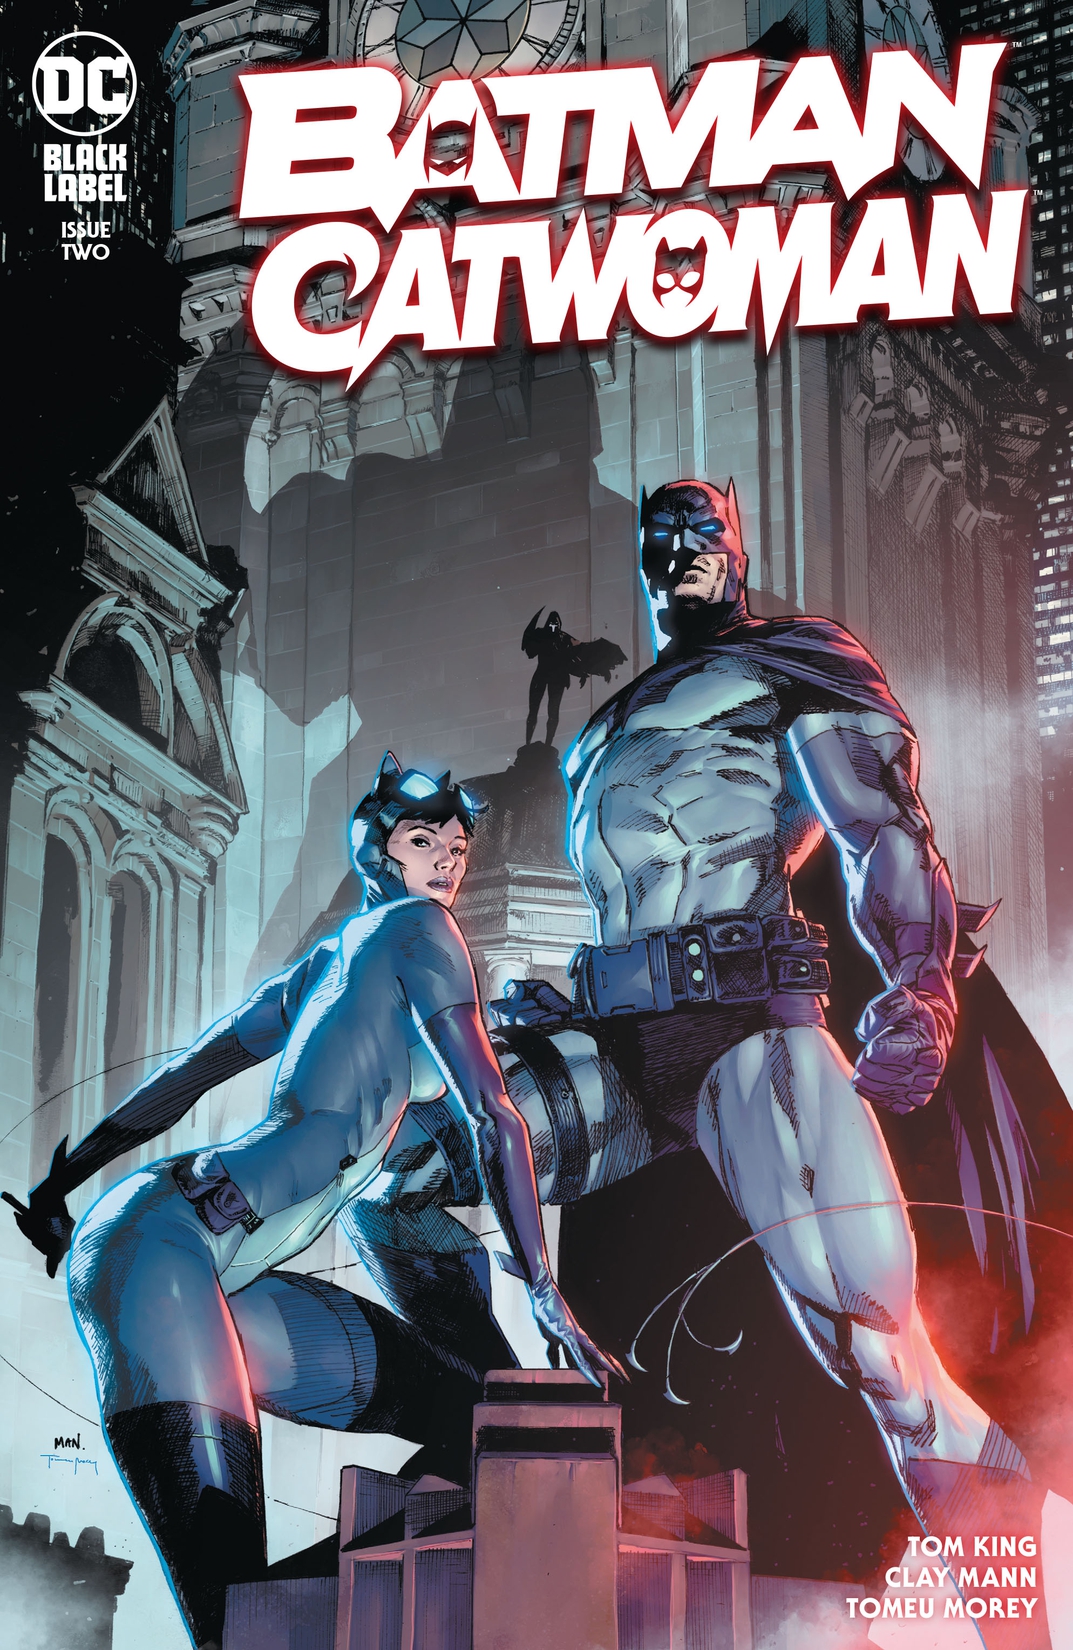 Batman/Catwoman #2 preview images